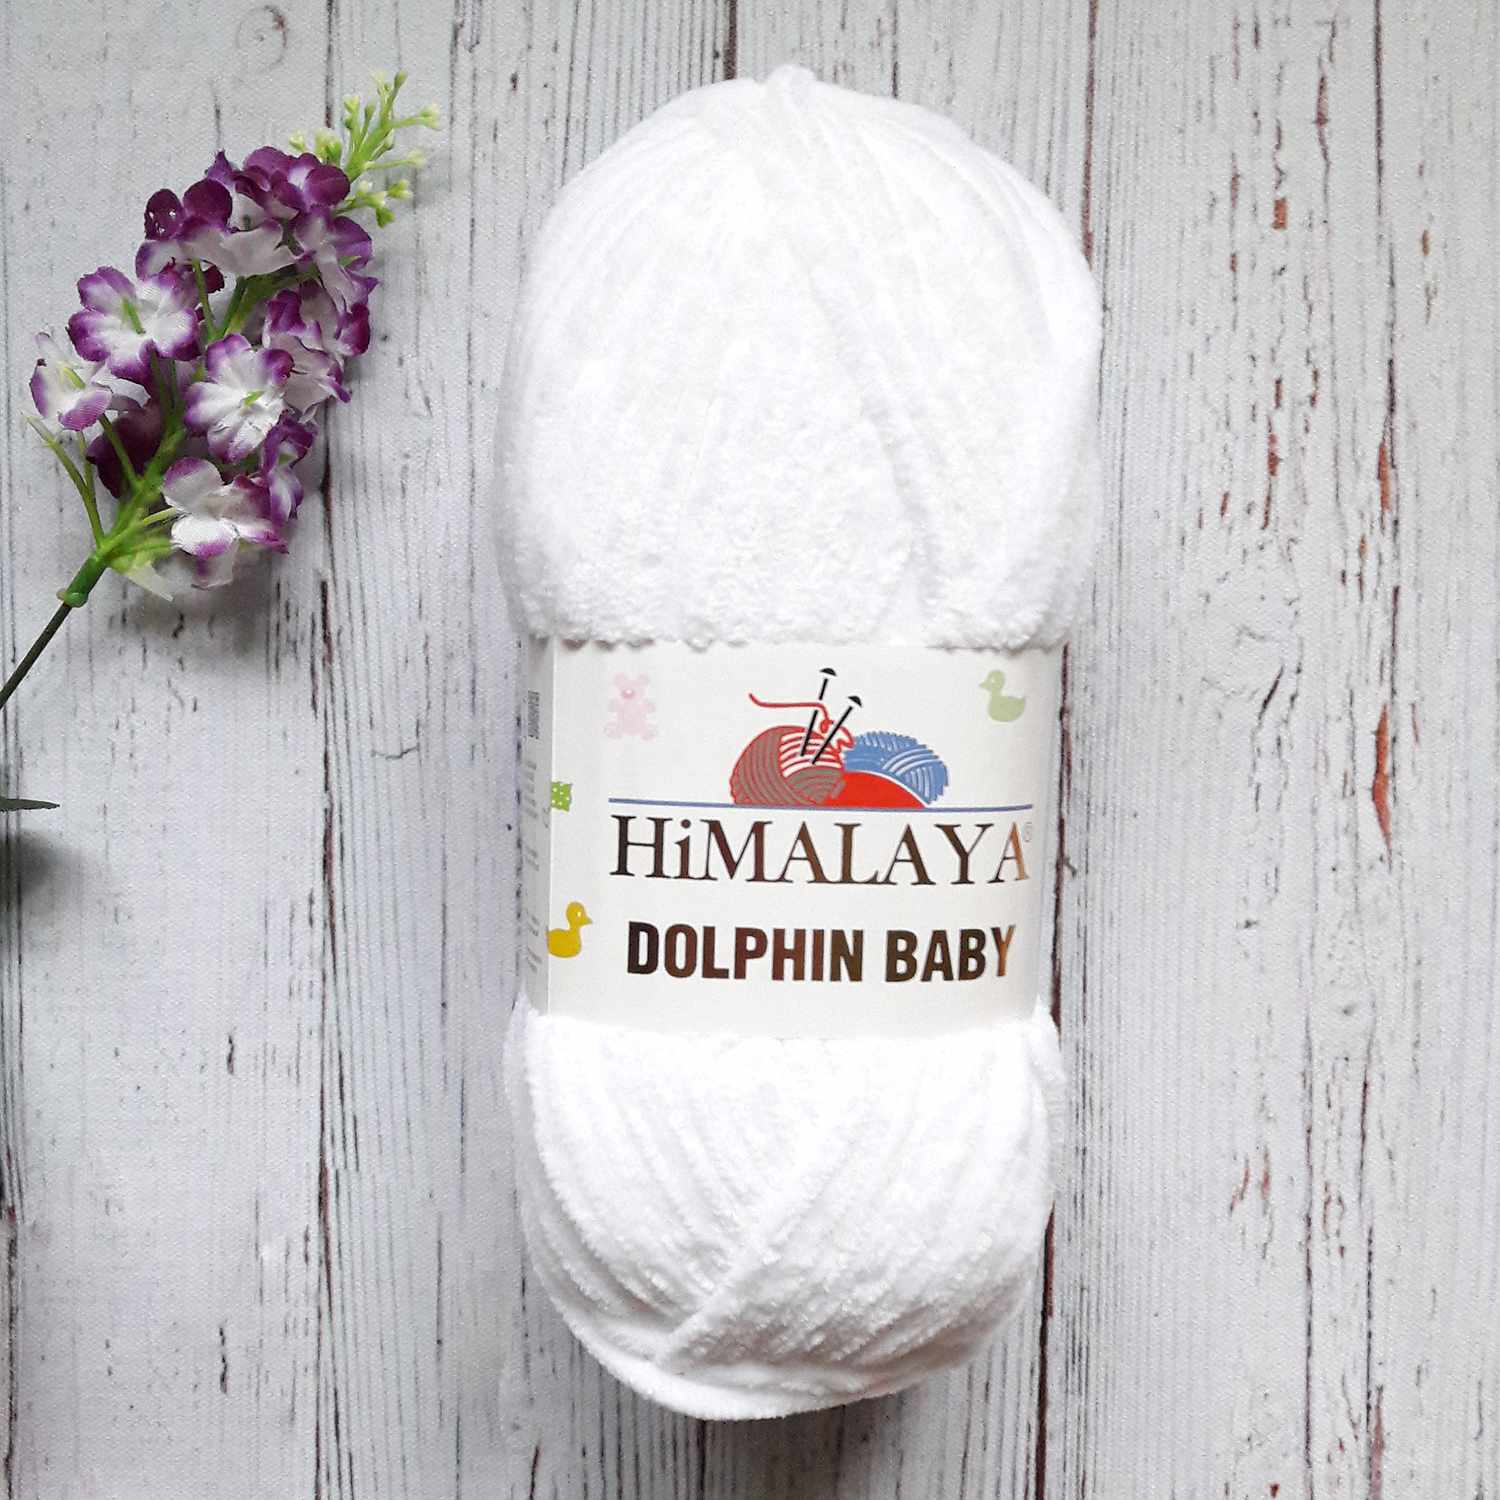 Пряжа Himalaya «Dolphin Baby» - купить пряжу Гималая Долфин Бэби, цены винтернет магазине Мир вышивки - «Мир Вышивки»